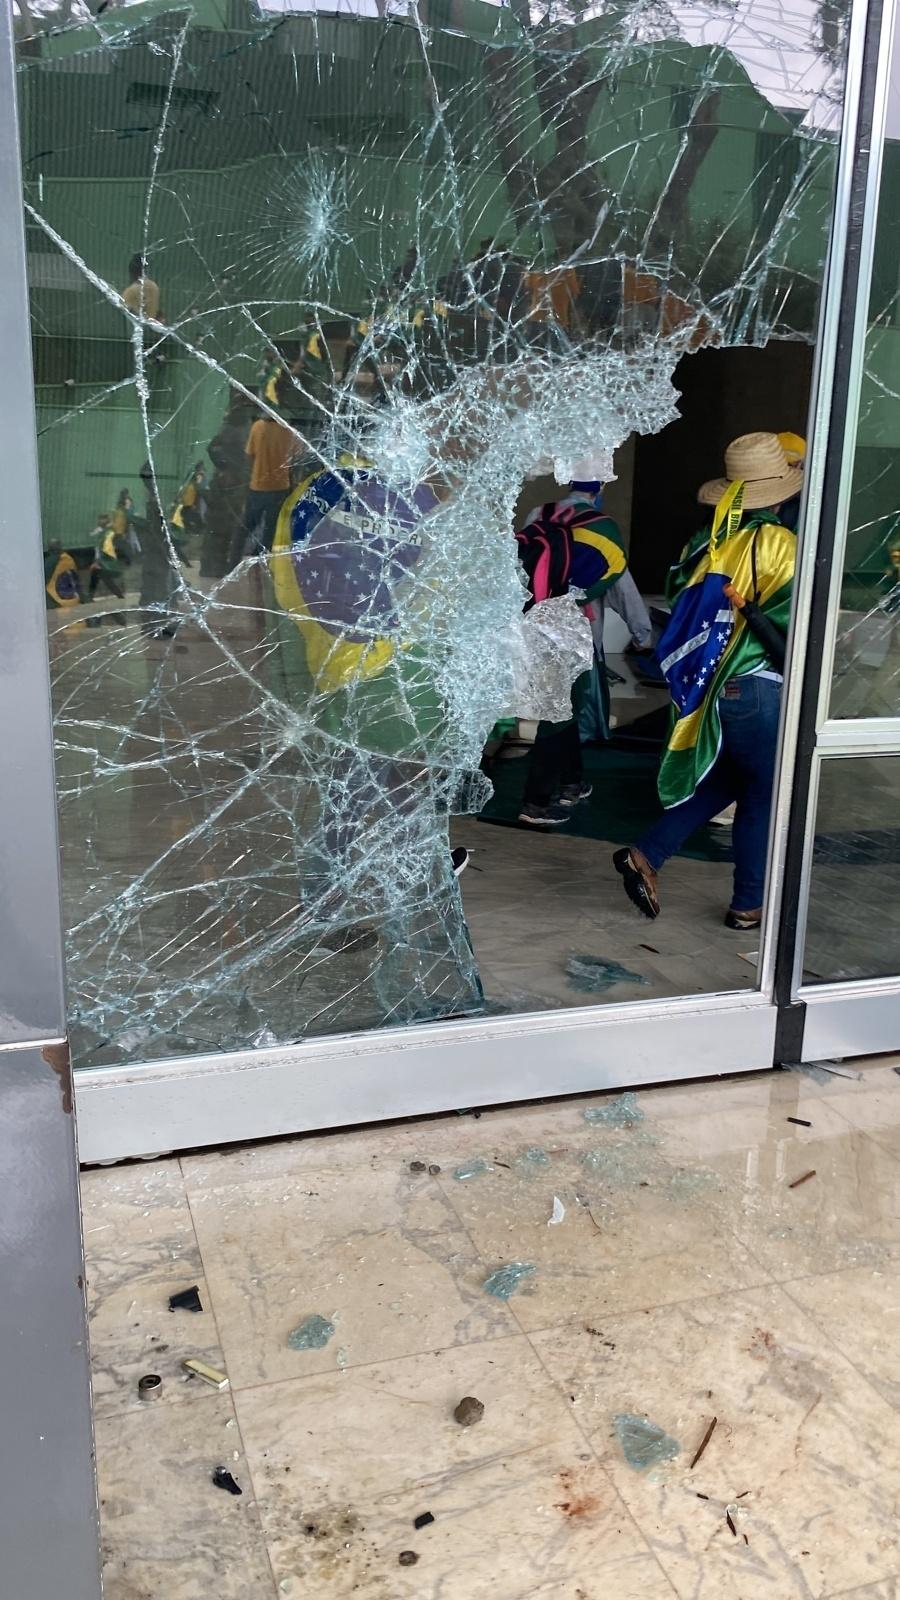 Golpistas causam estragos e destruição no Brasil - Letícia Casado/UOL